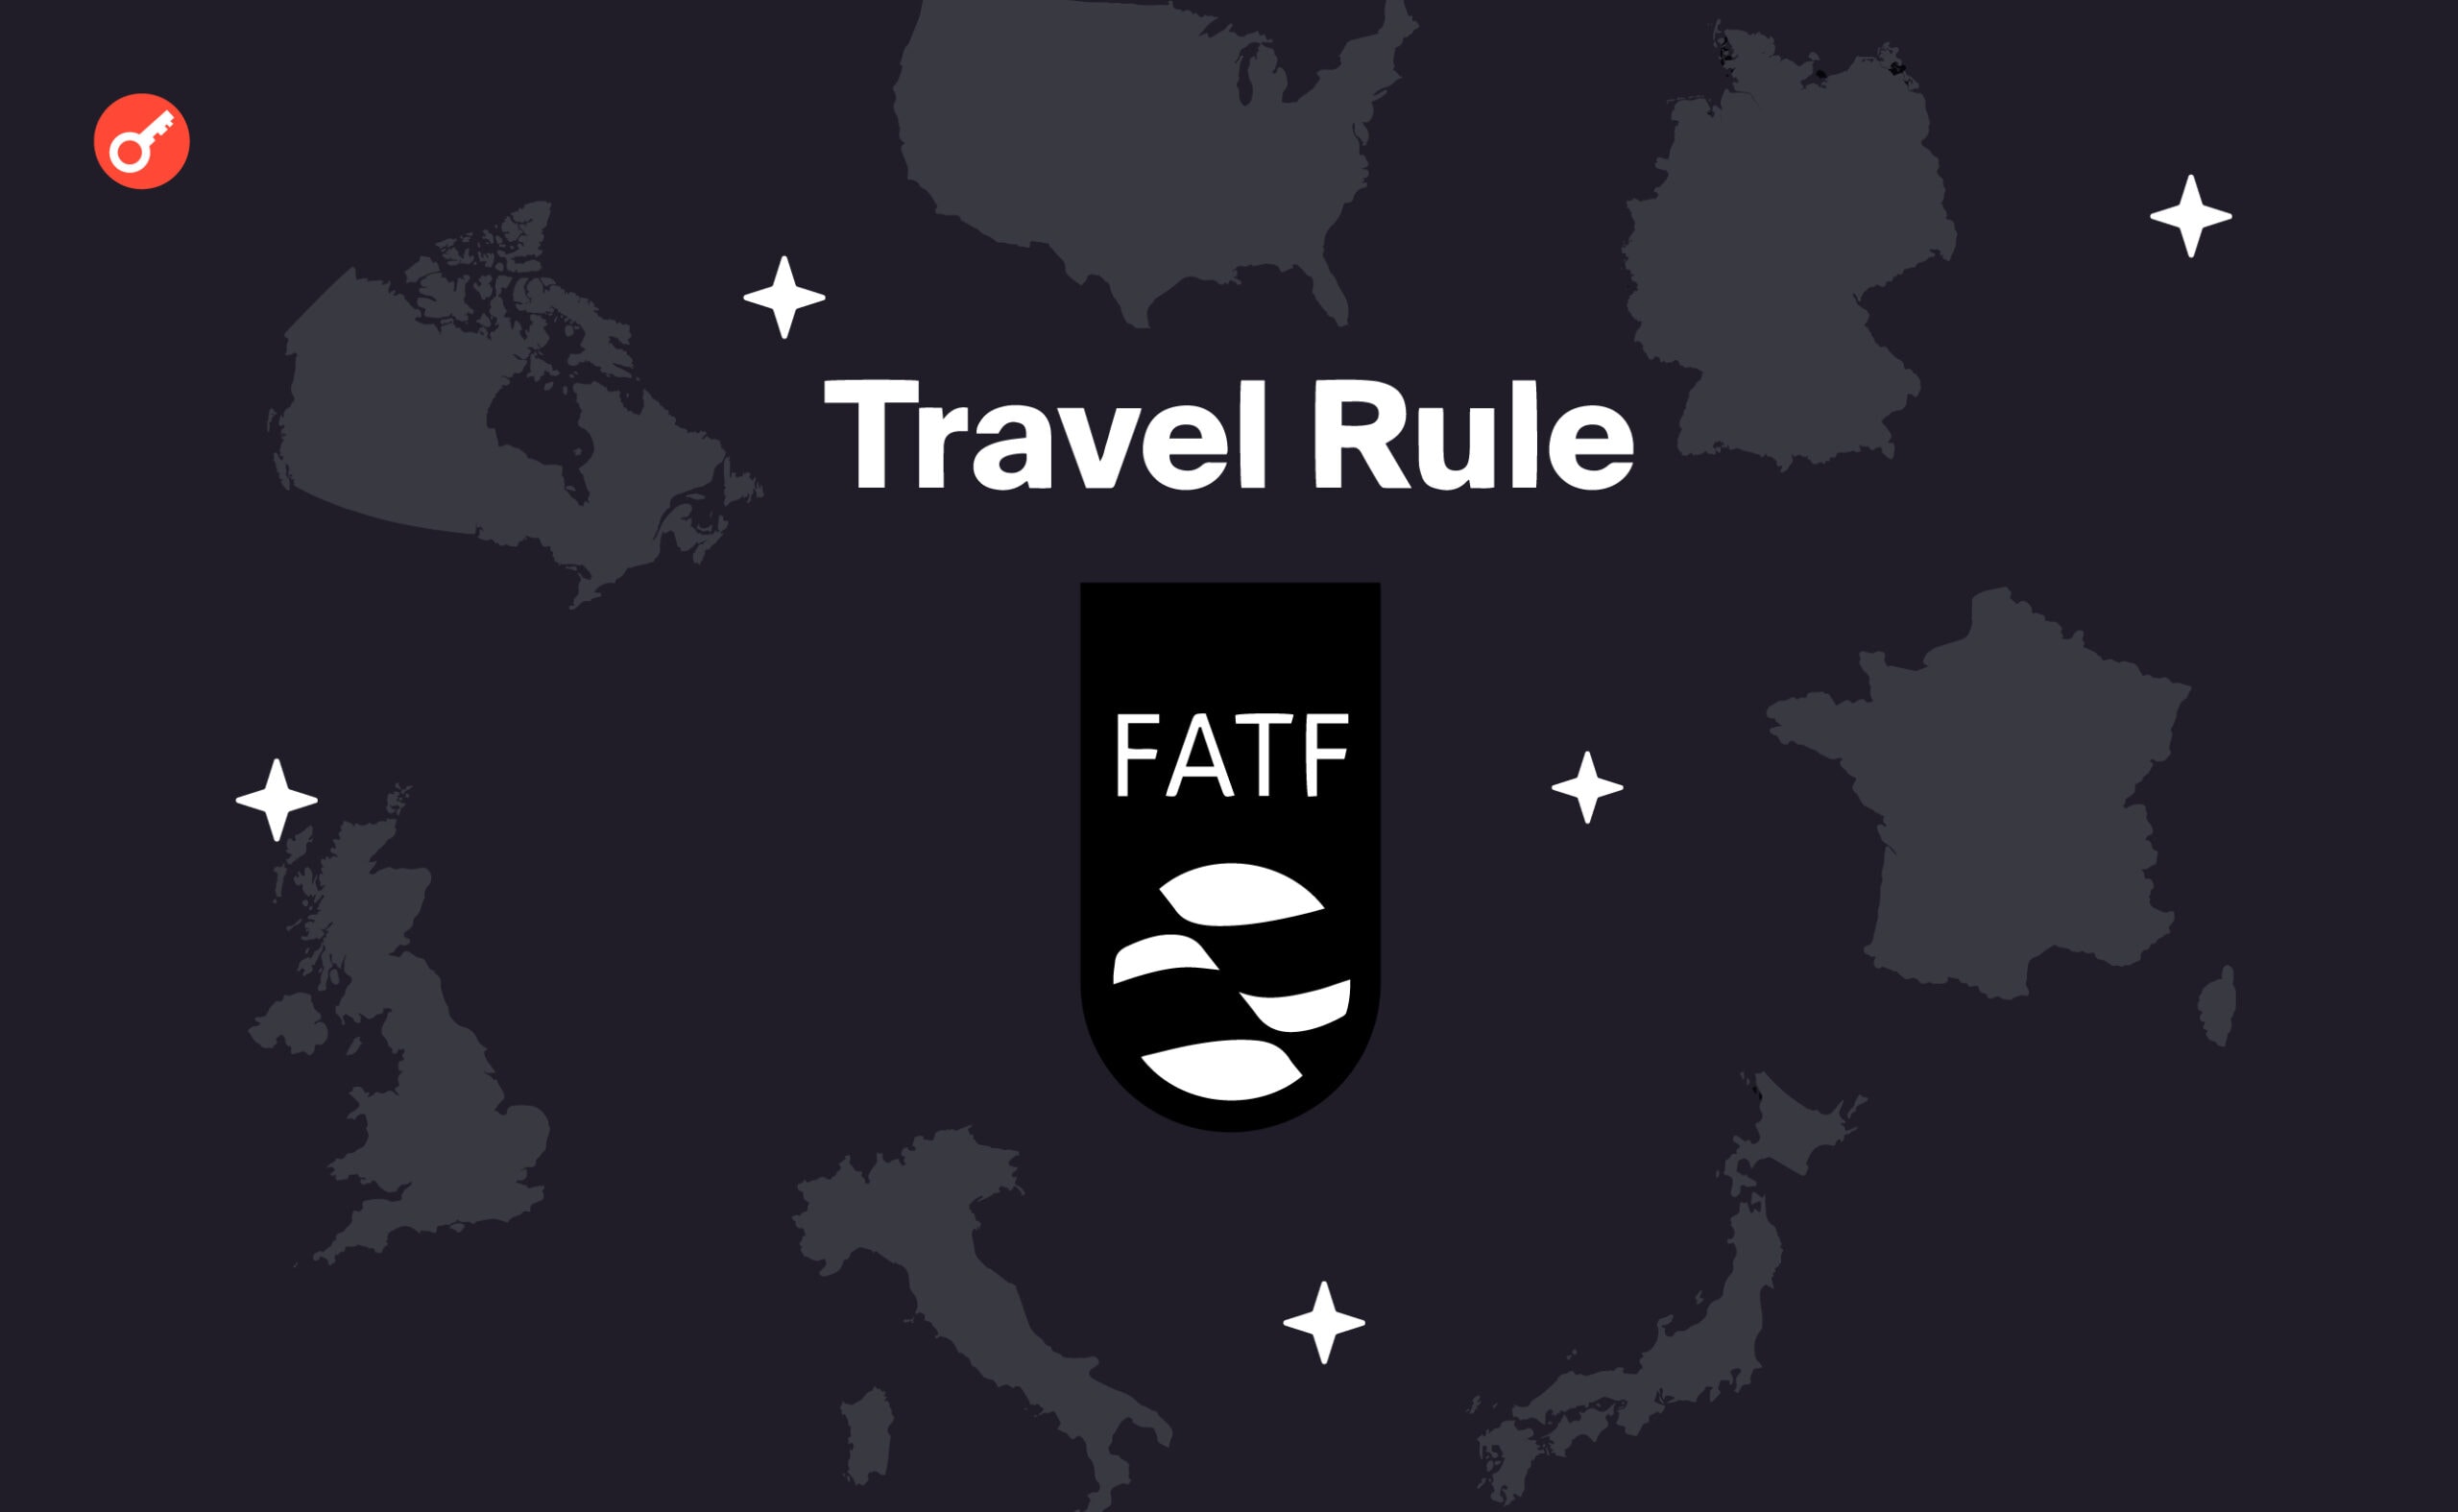 G7 наполягає на повсюдному впровадженні «Travel Rule» від FATF. Головний колаж новини.